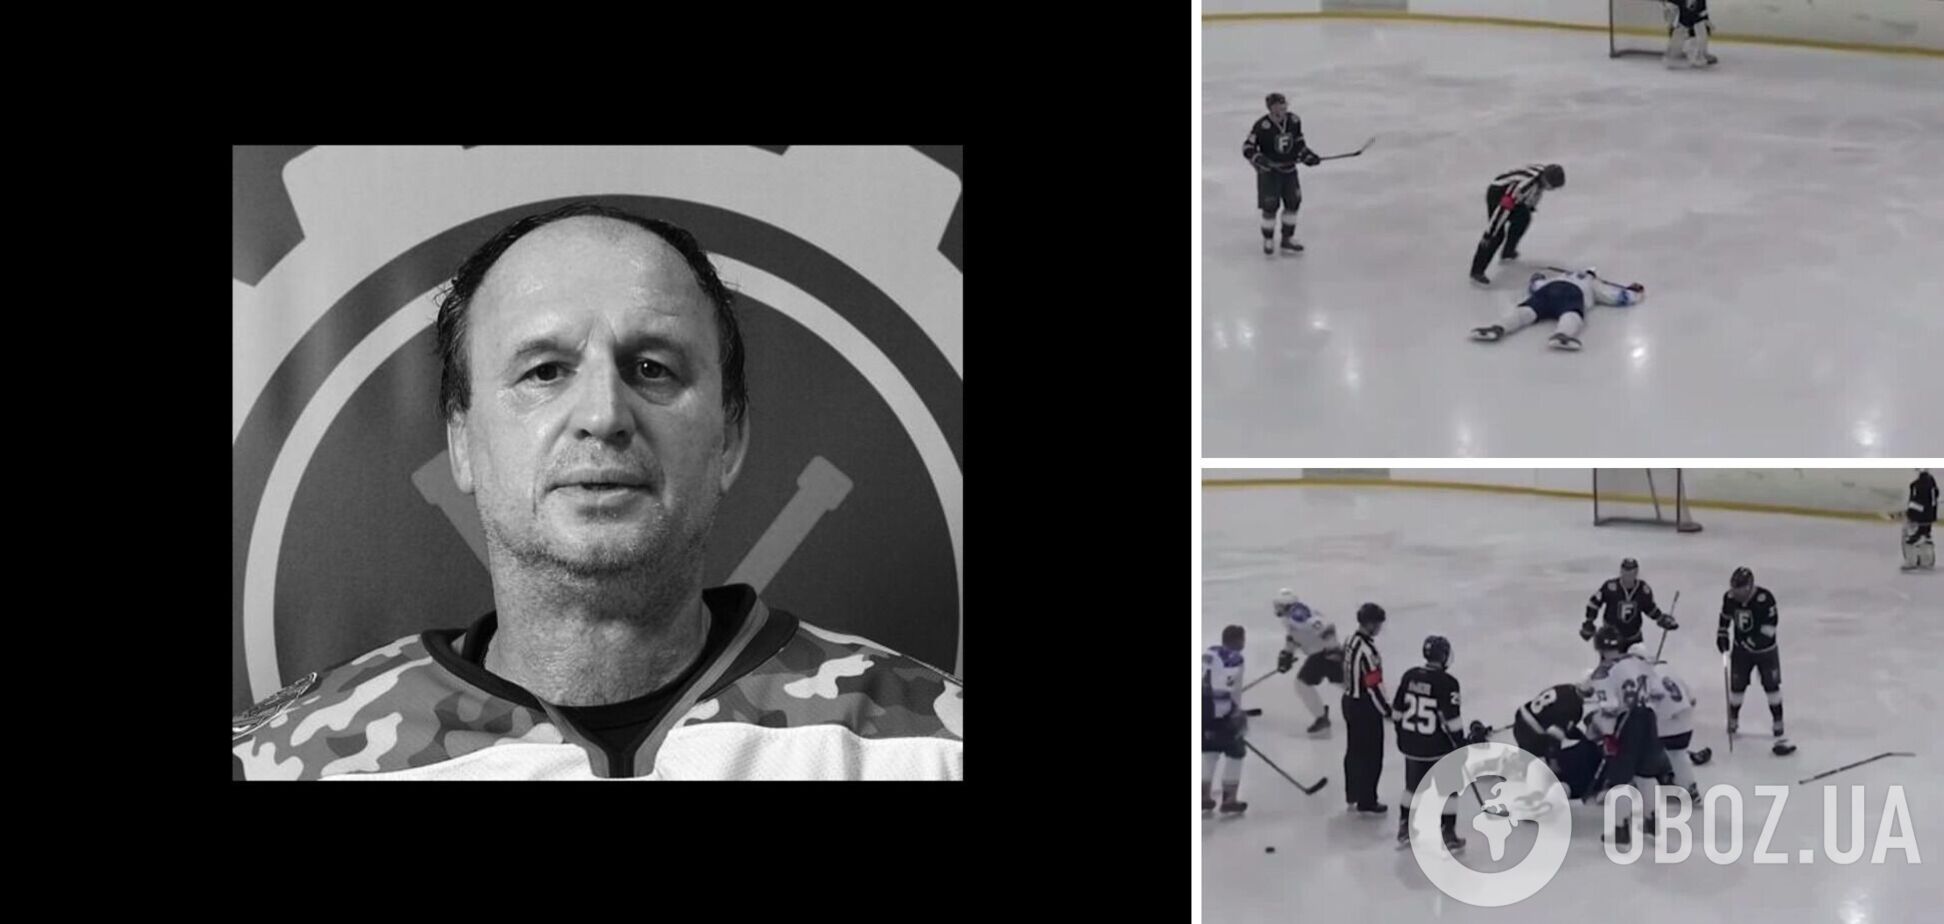 В Москве хоккеист умер во время матча. Видео